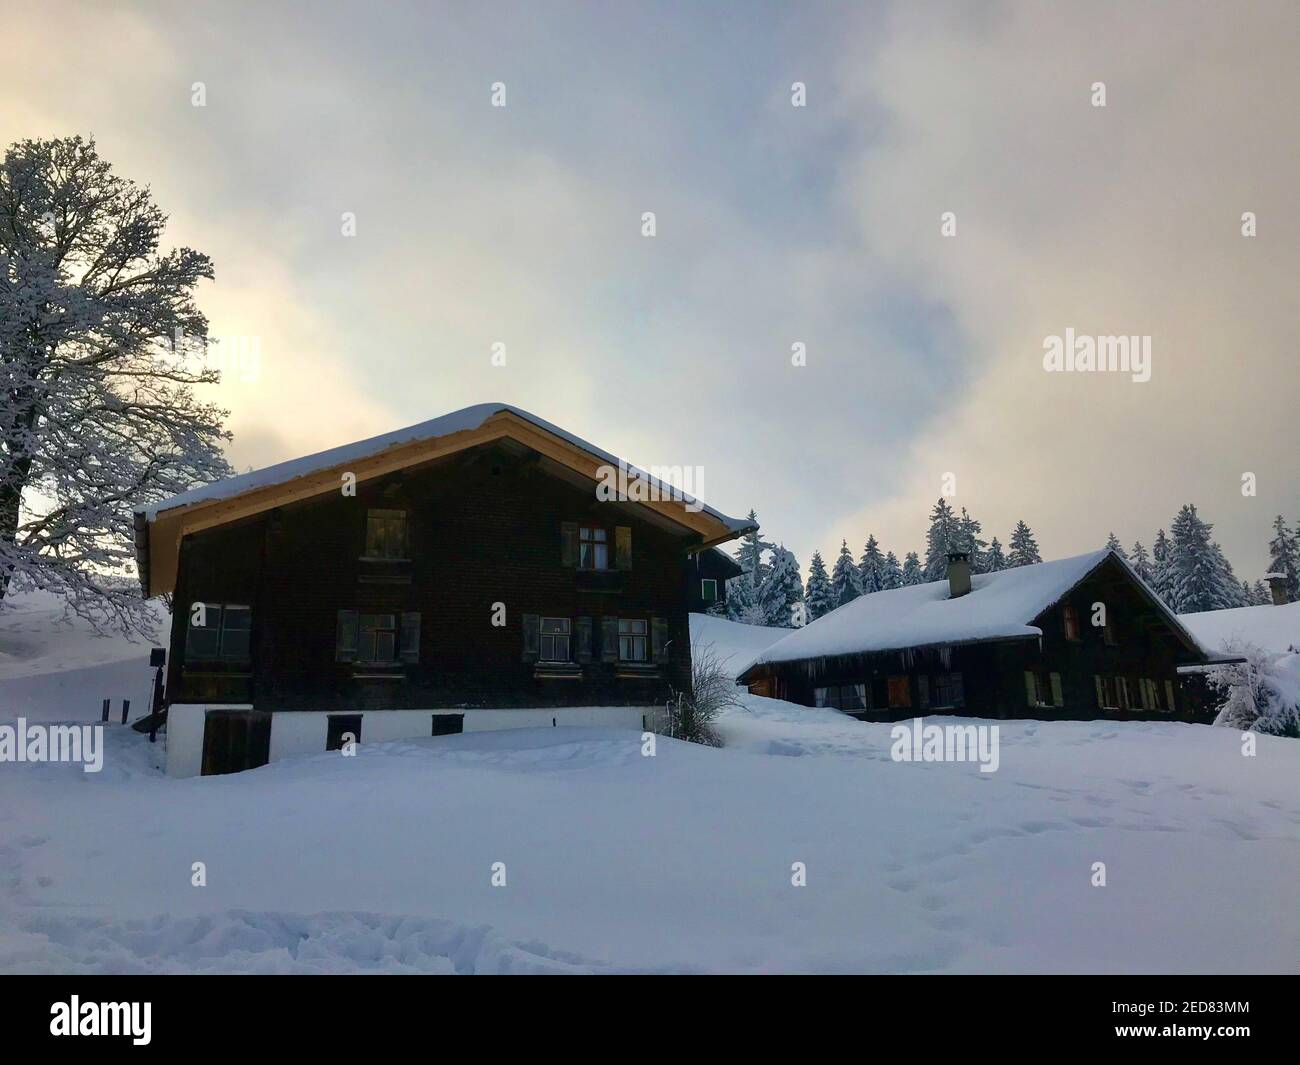 casa de vacaciones con un solo árbol nevado, país de las maravillas de invierno. Las cabañas de madera están justo en la pista de esquí cubierta de nieve. Magic Travel Bödele Dornbirn Foto de stock